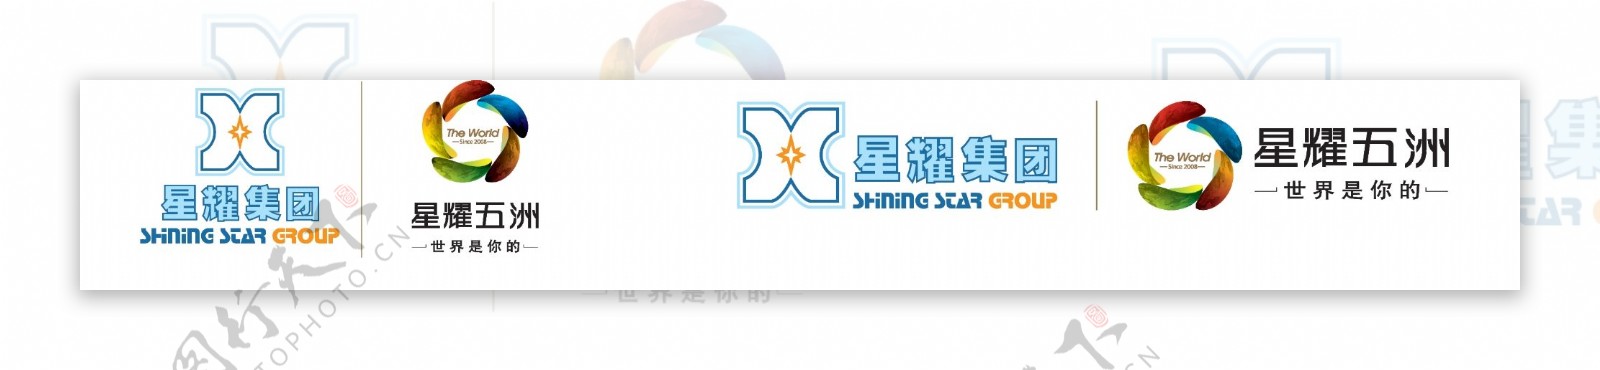 星耀五洲logo图片